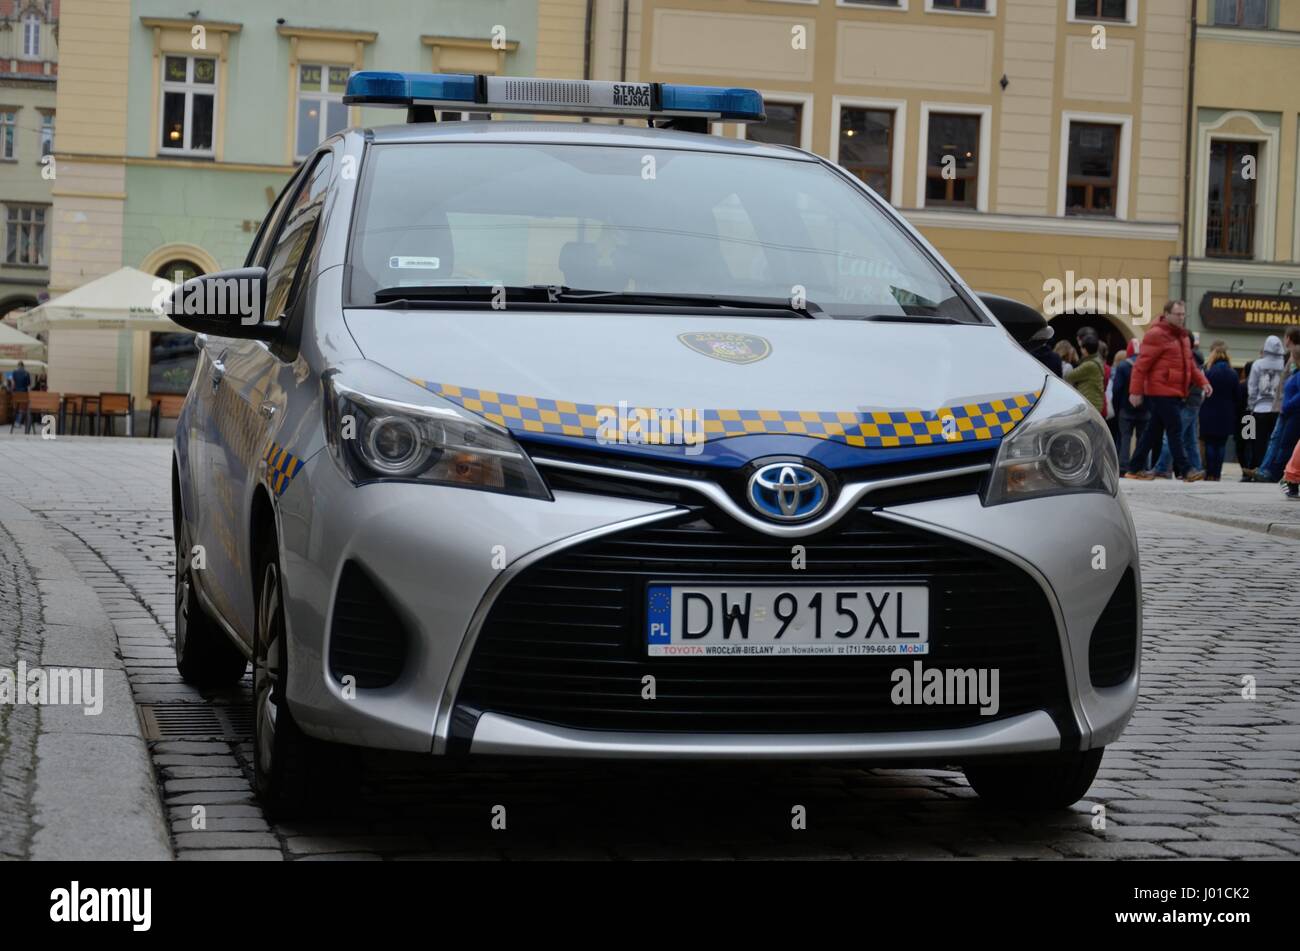 Voiture de police municipaux polonais, Wroclaw. Toyota Yaris. Miejska Straz. La Pologne. Banque D'Images